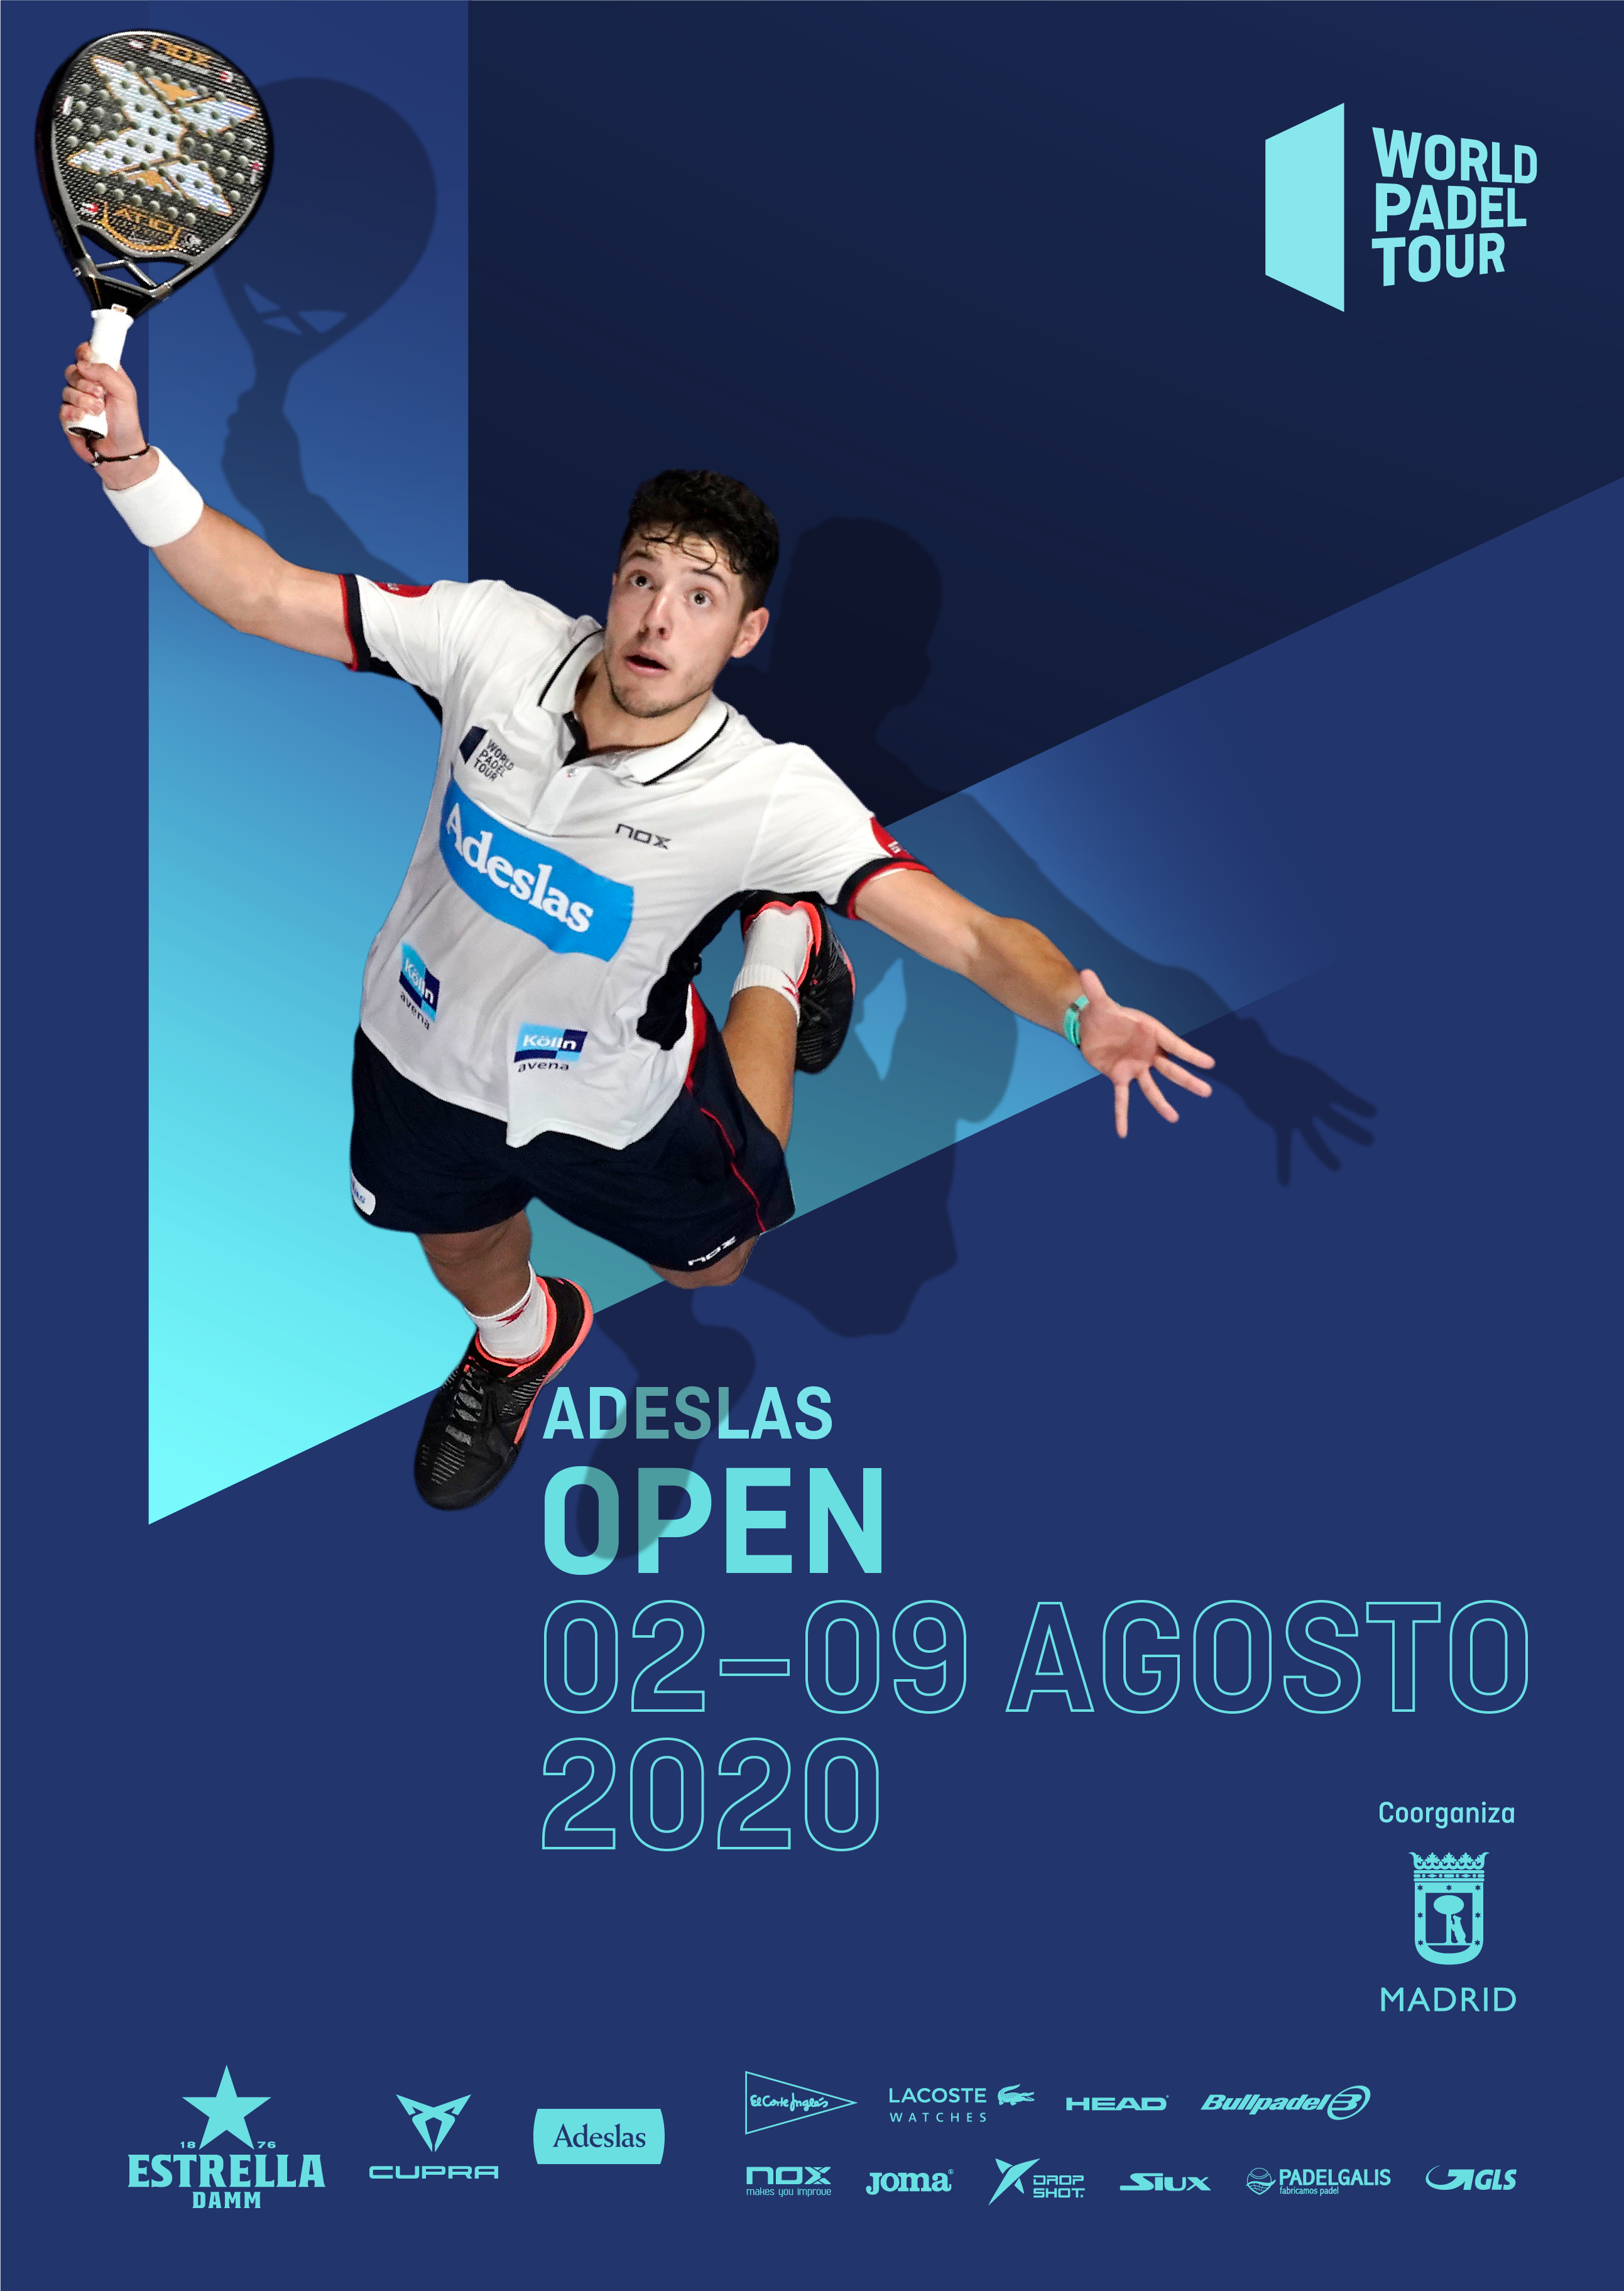 Adeslas Open 2020